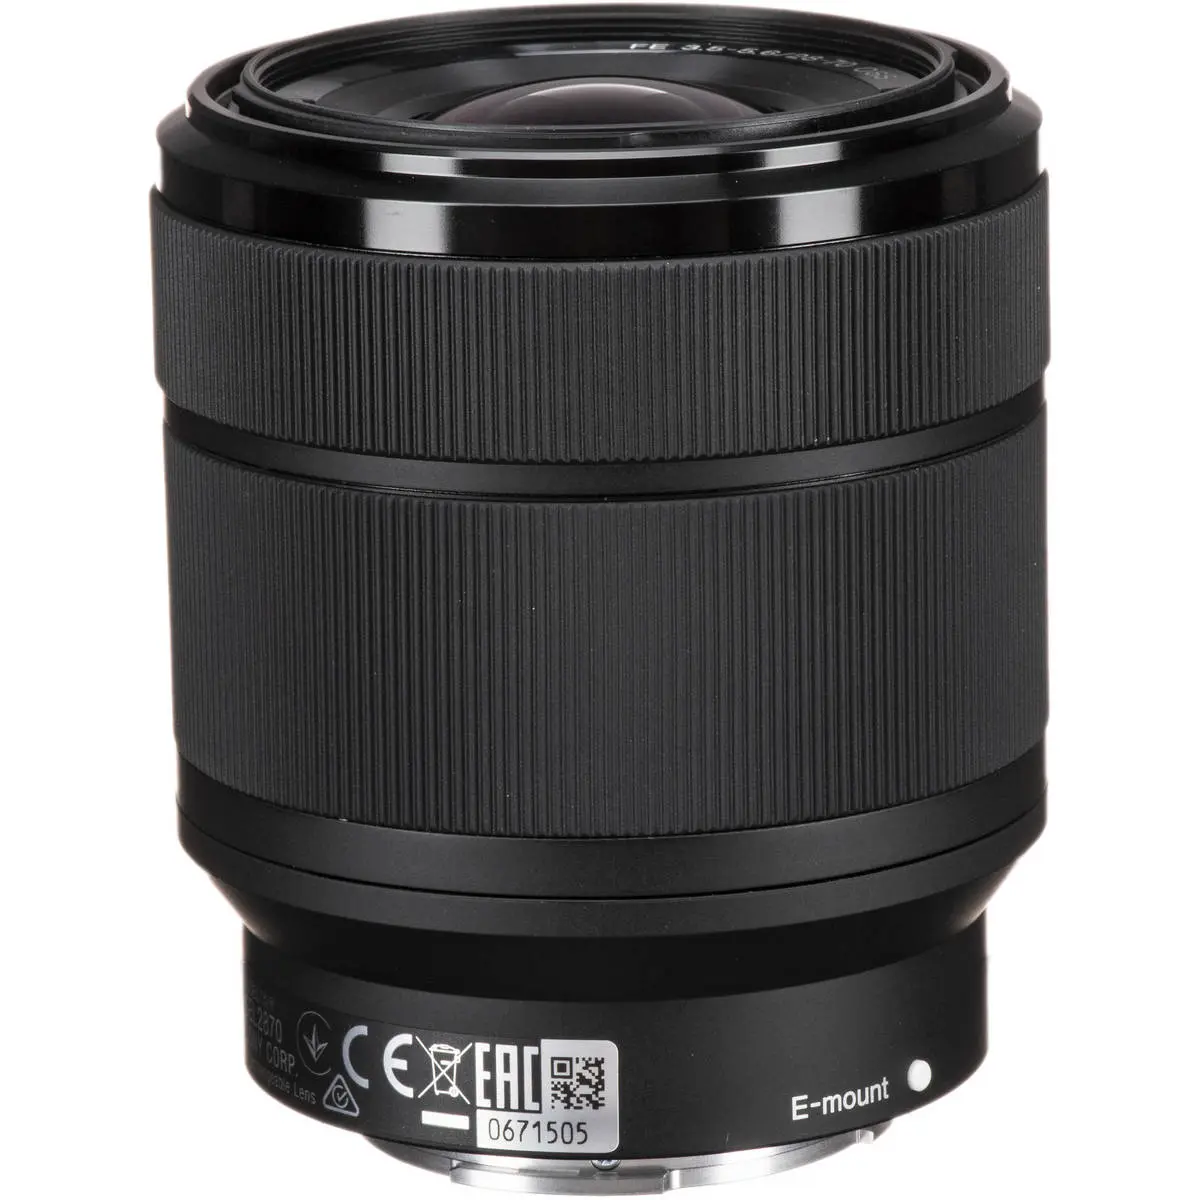 2. Sony FE 28-70mm F3.5-5.6 OSS SEL2870 E-Mount Full Frame Lens